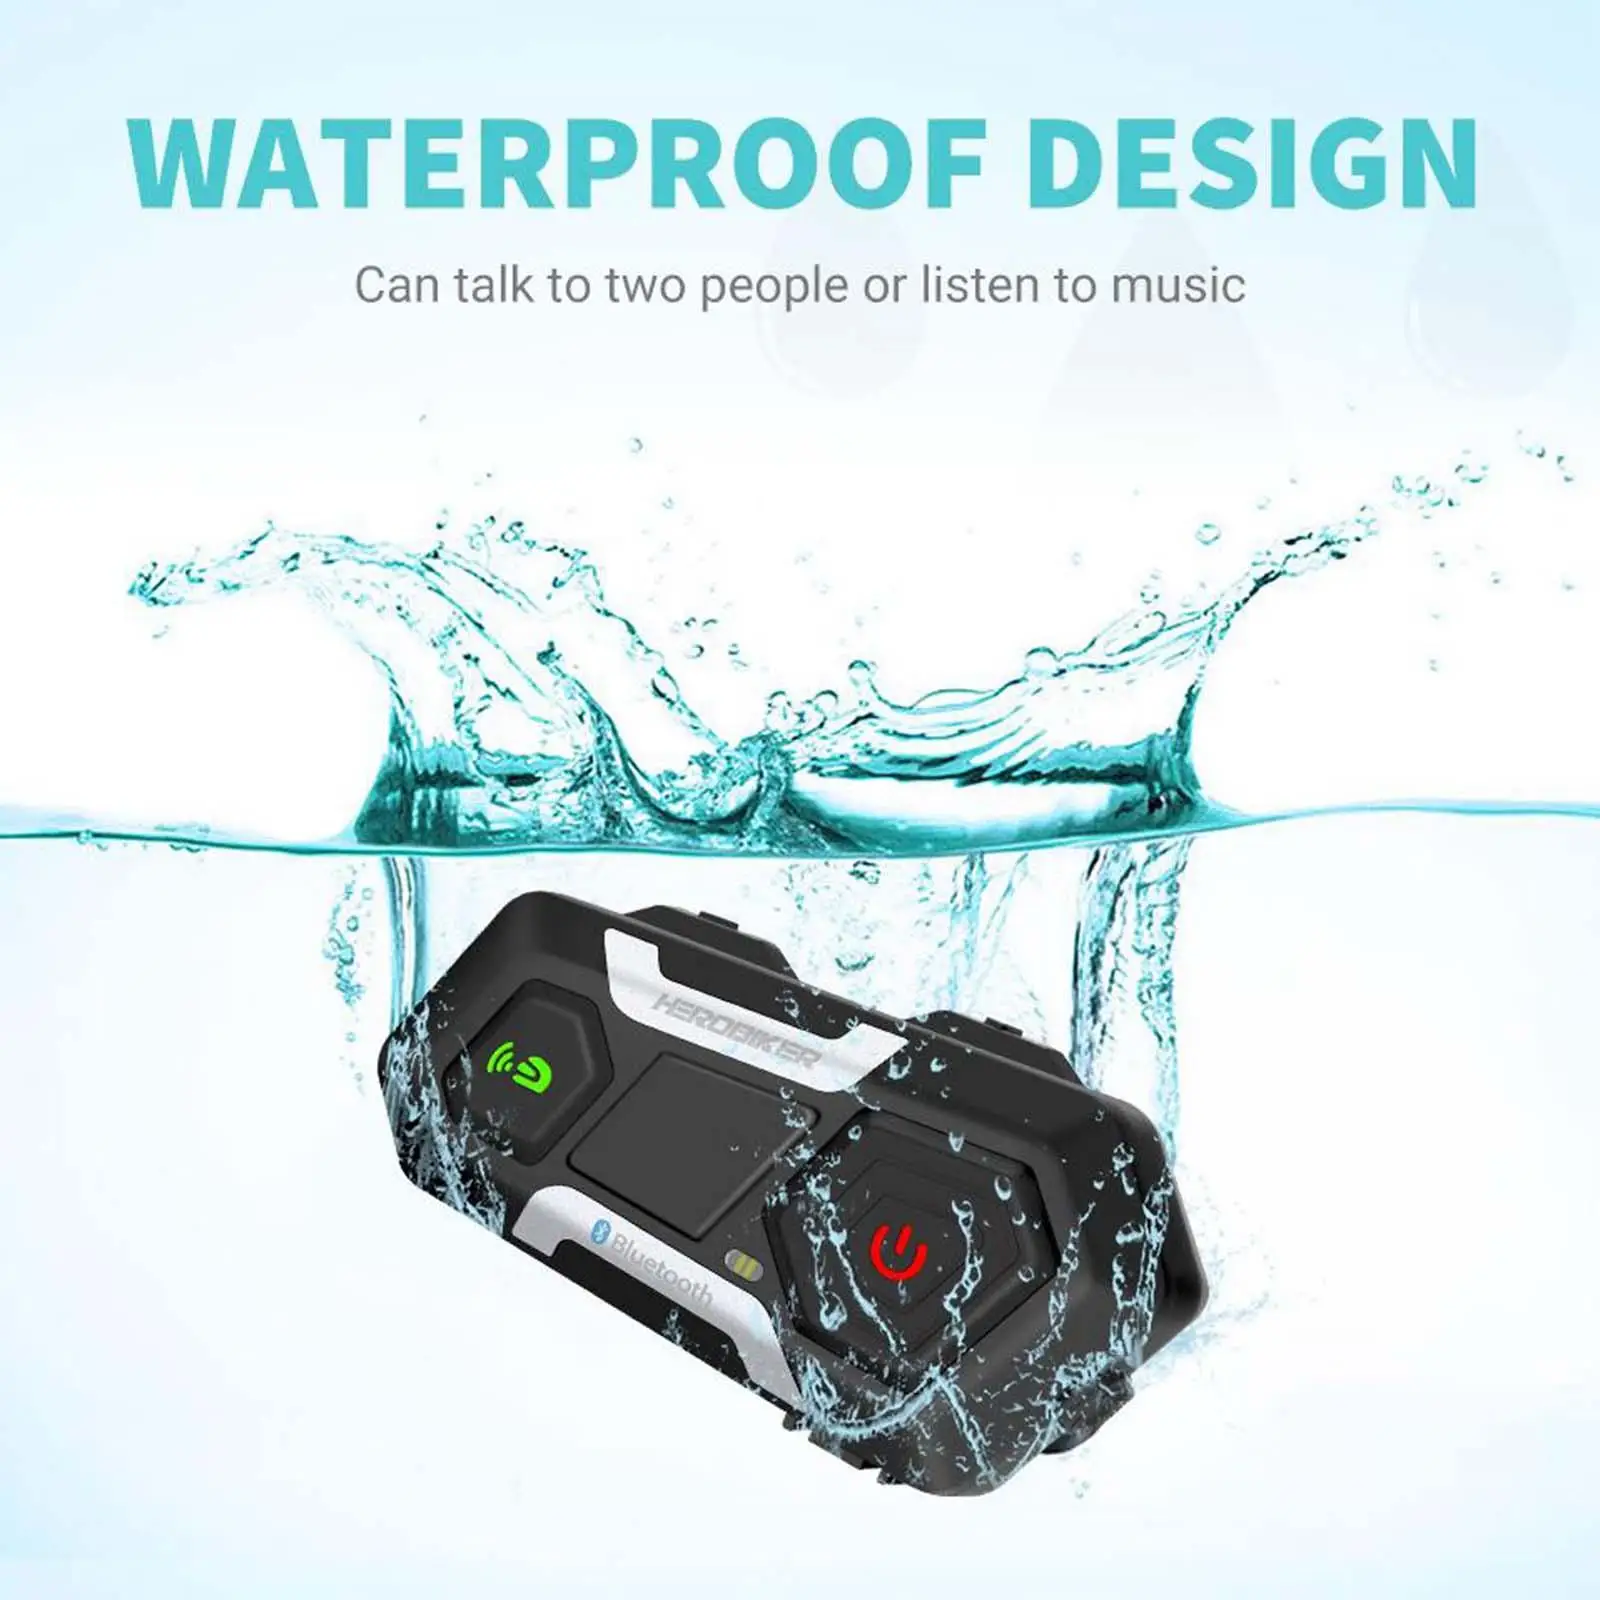 Motorcycle Intercom Interphone 1200M Bluetooth Headset Waterproof for Helmet